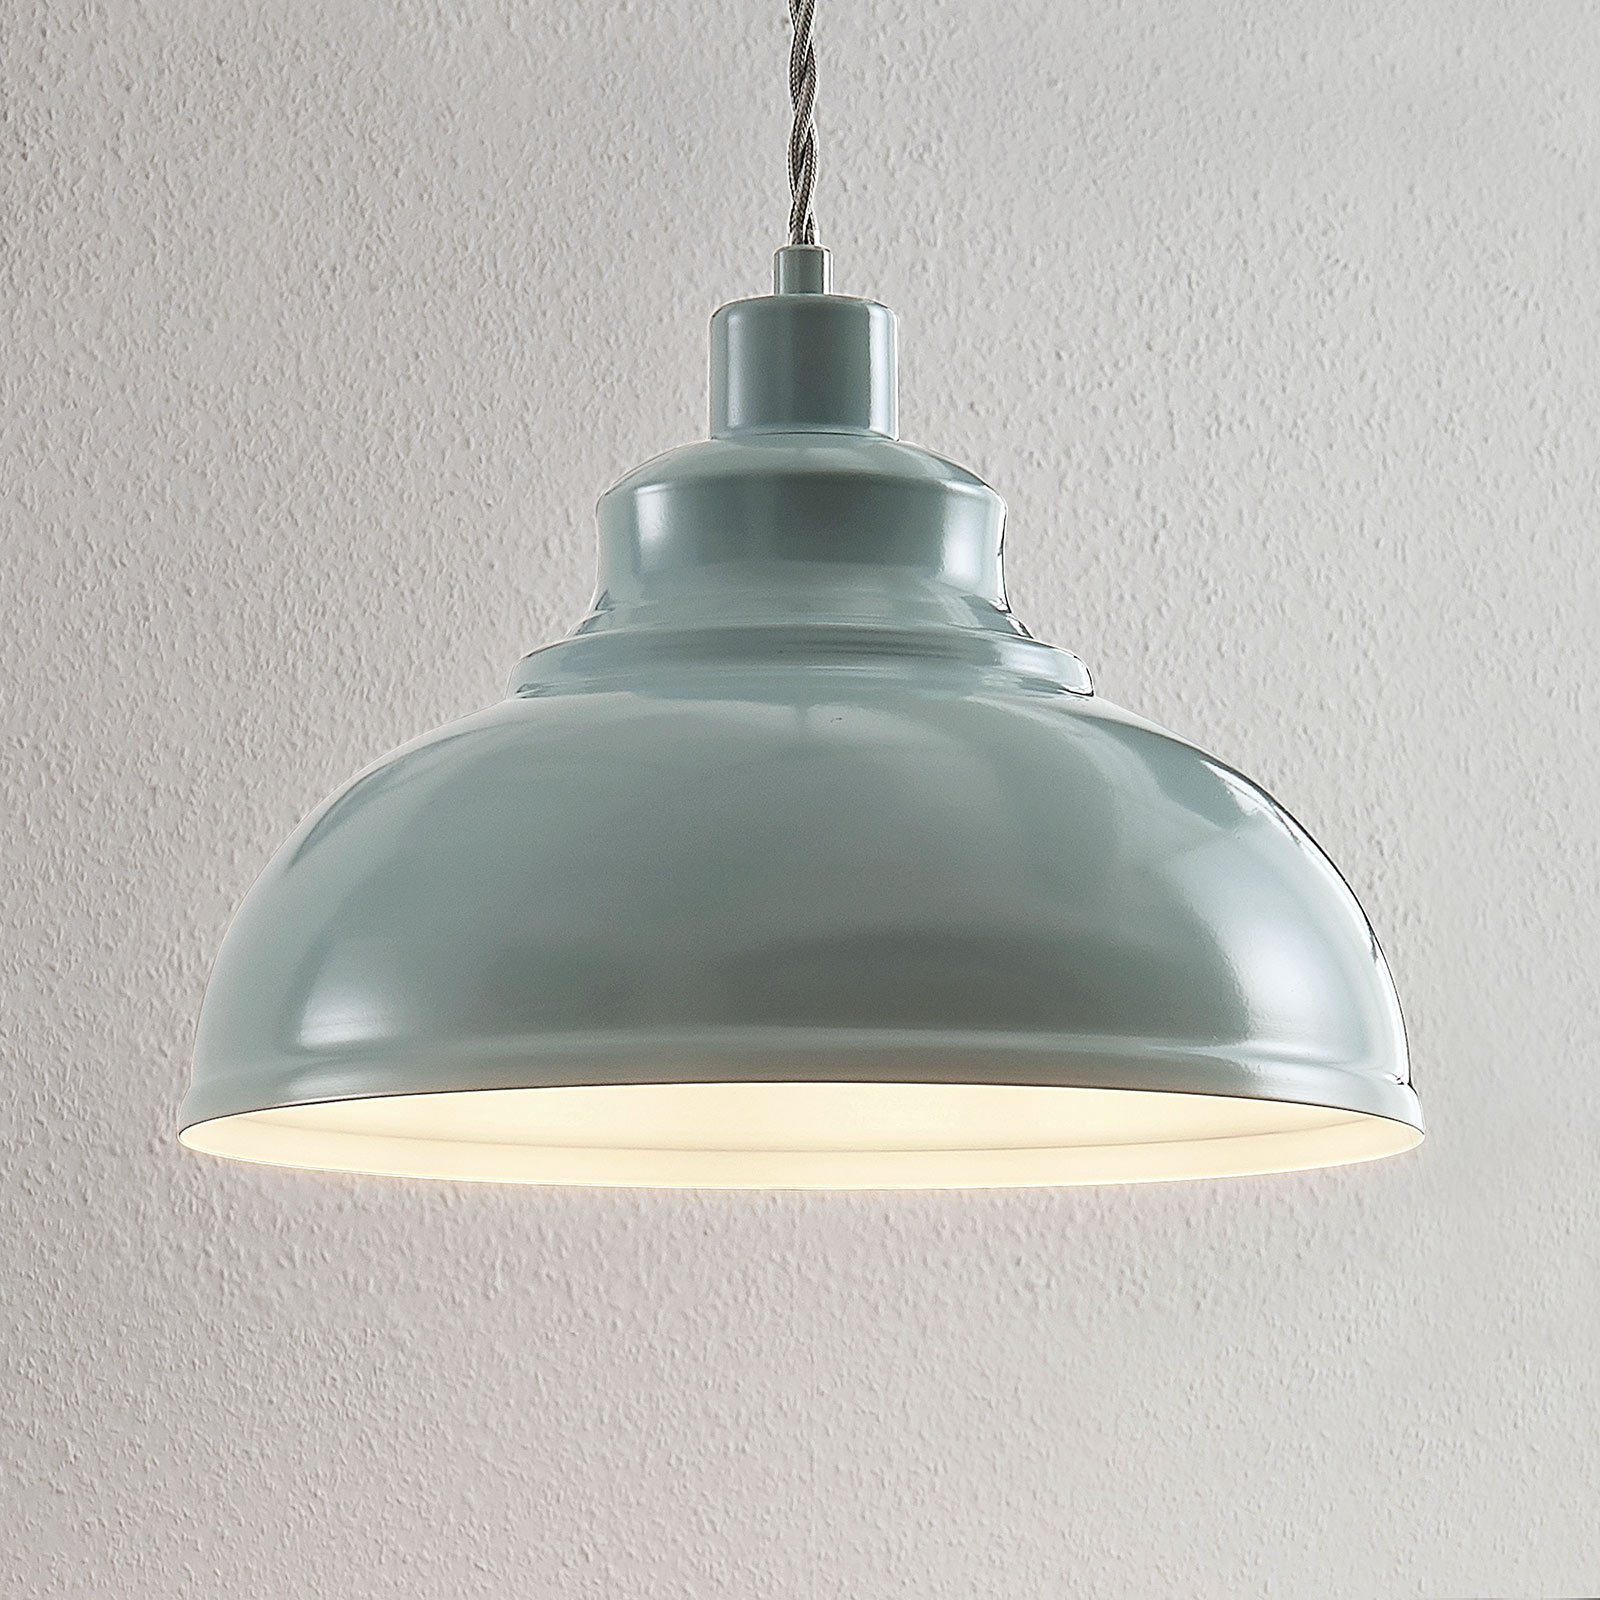 Vintage hanglamp Albertine, metaal, lichtblauw